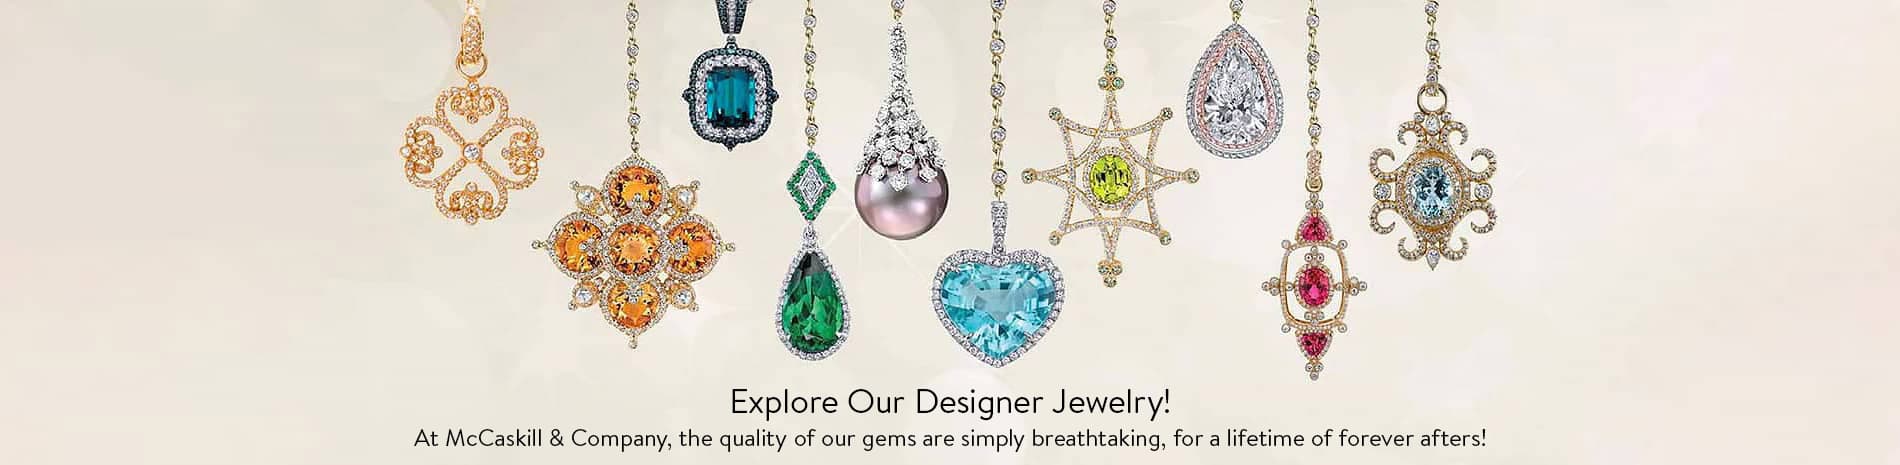 Explore our Designer Jewelry!